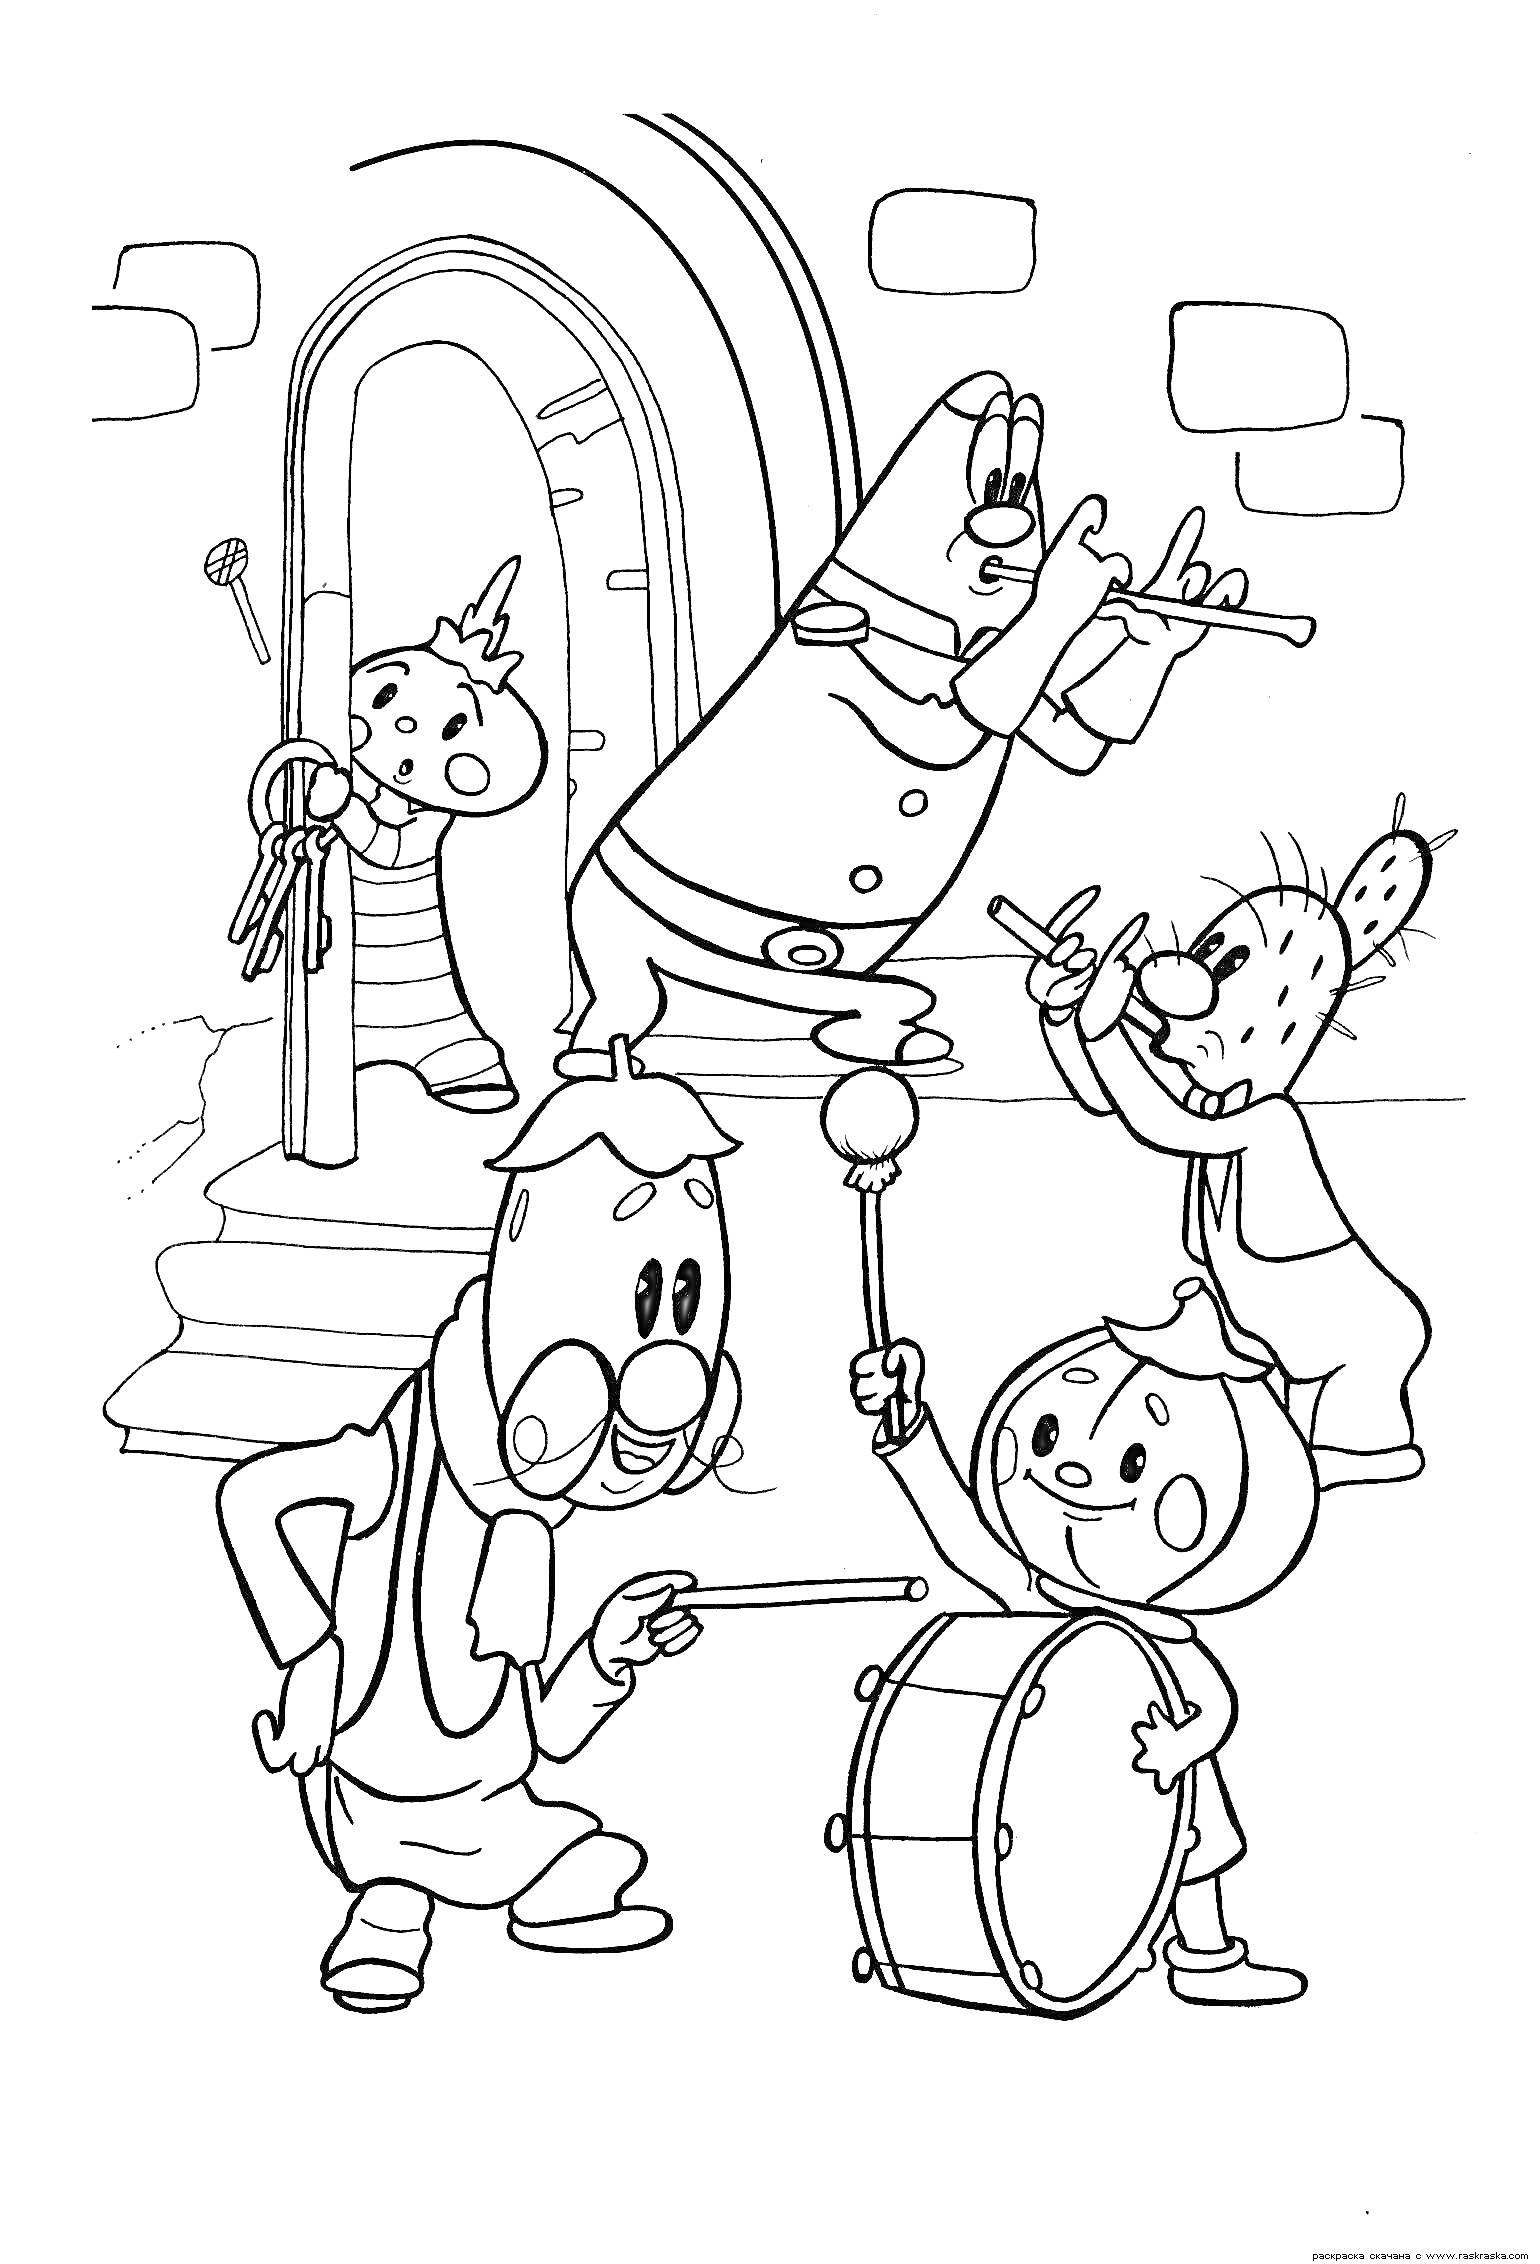 Раскраска Чиполлино и друзья играют на музыкальных инструментах у арки с дверью